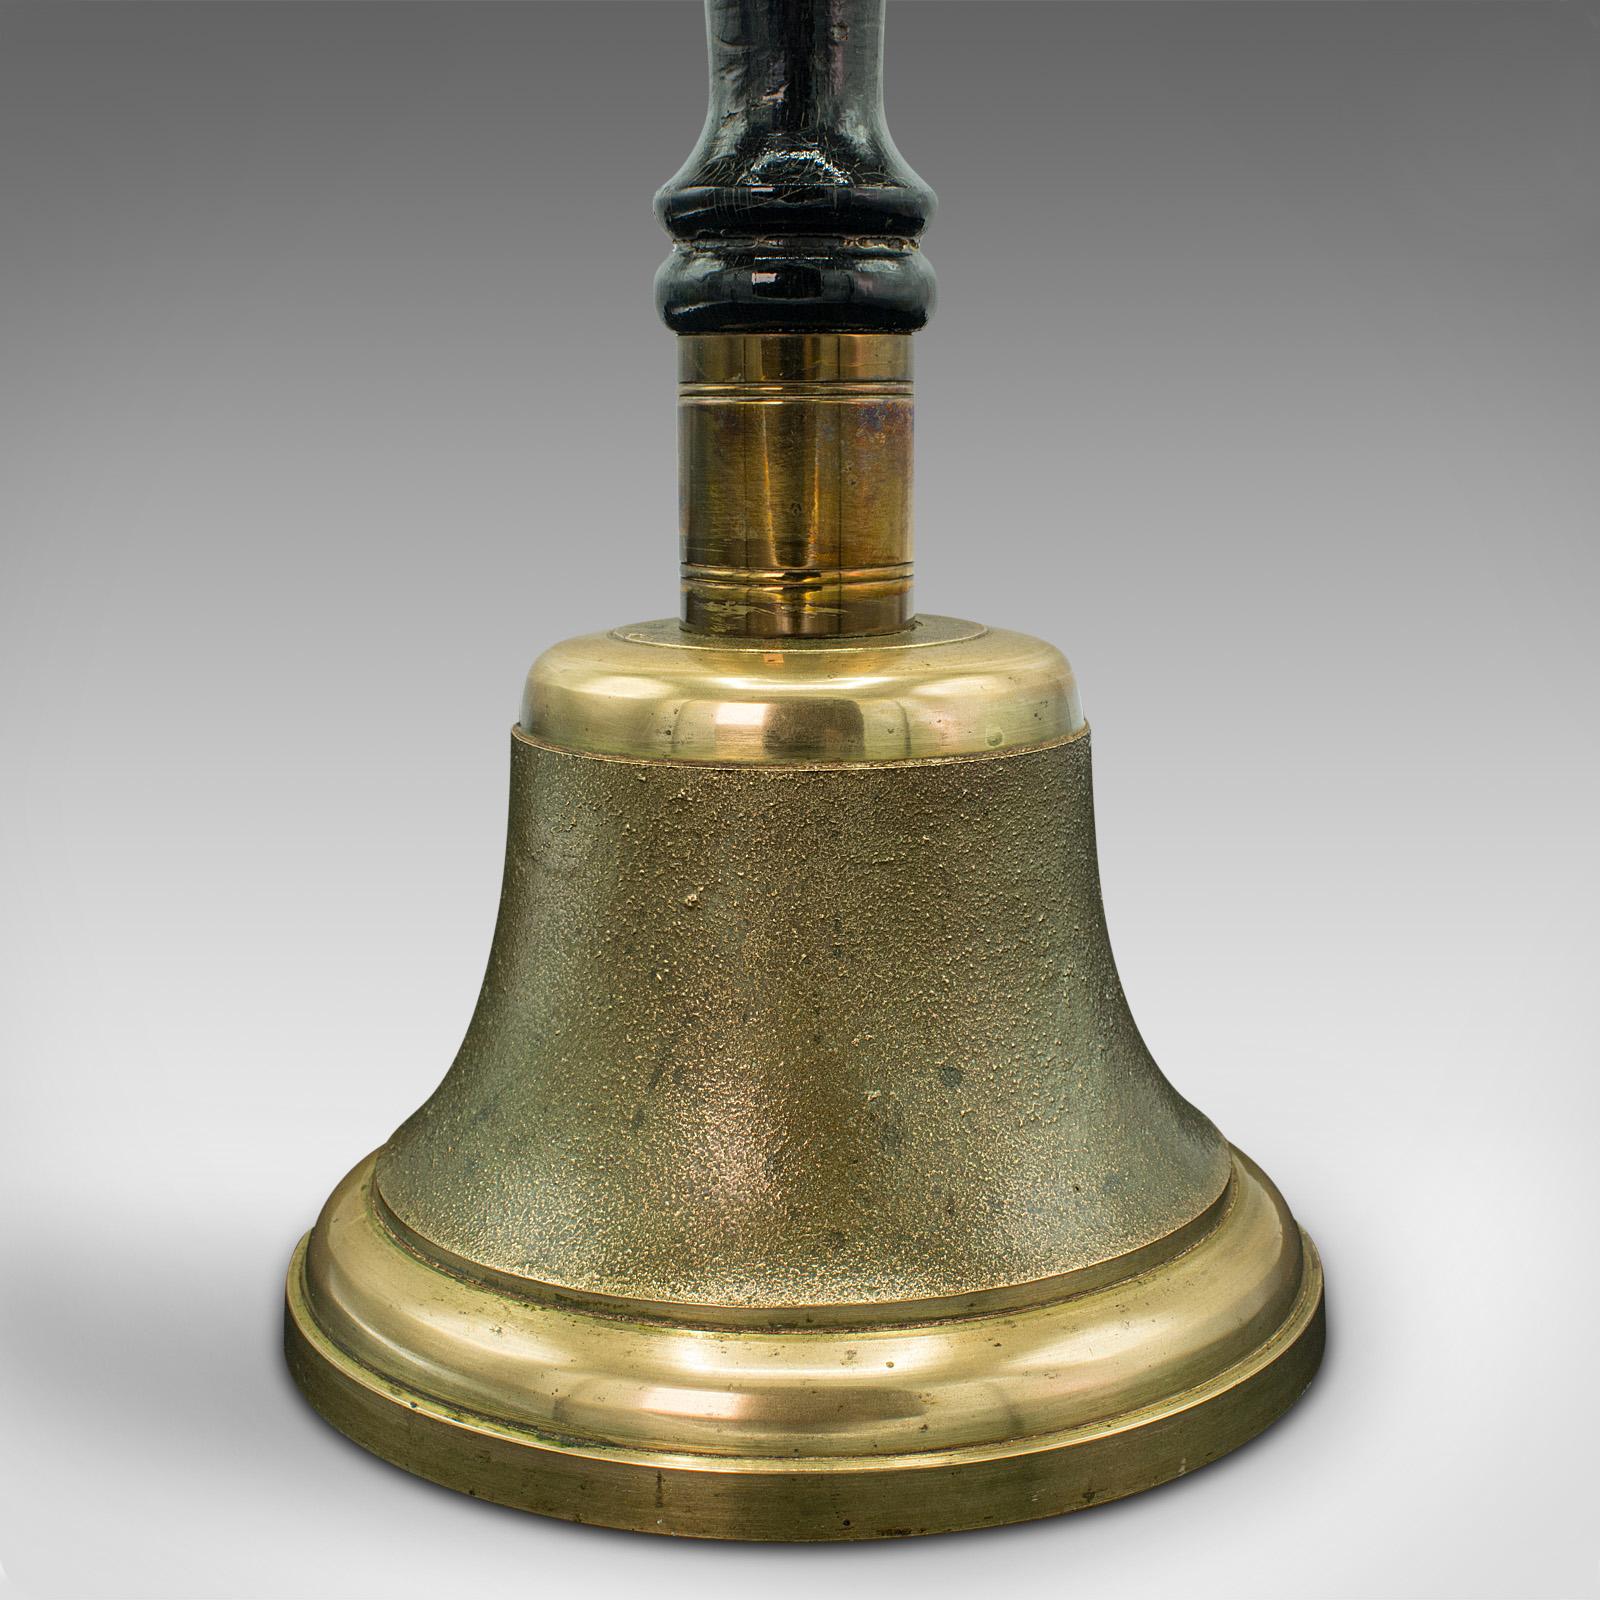 British Antique Town Clerk's Hand Bell, English, Brass, School Yard Ringer, Edwardian